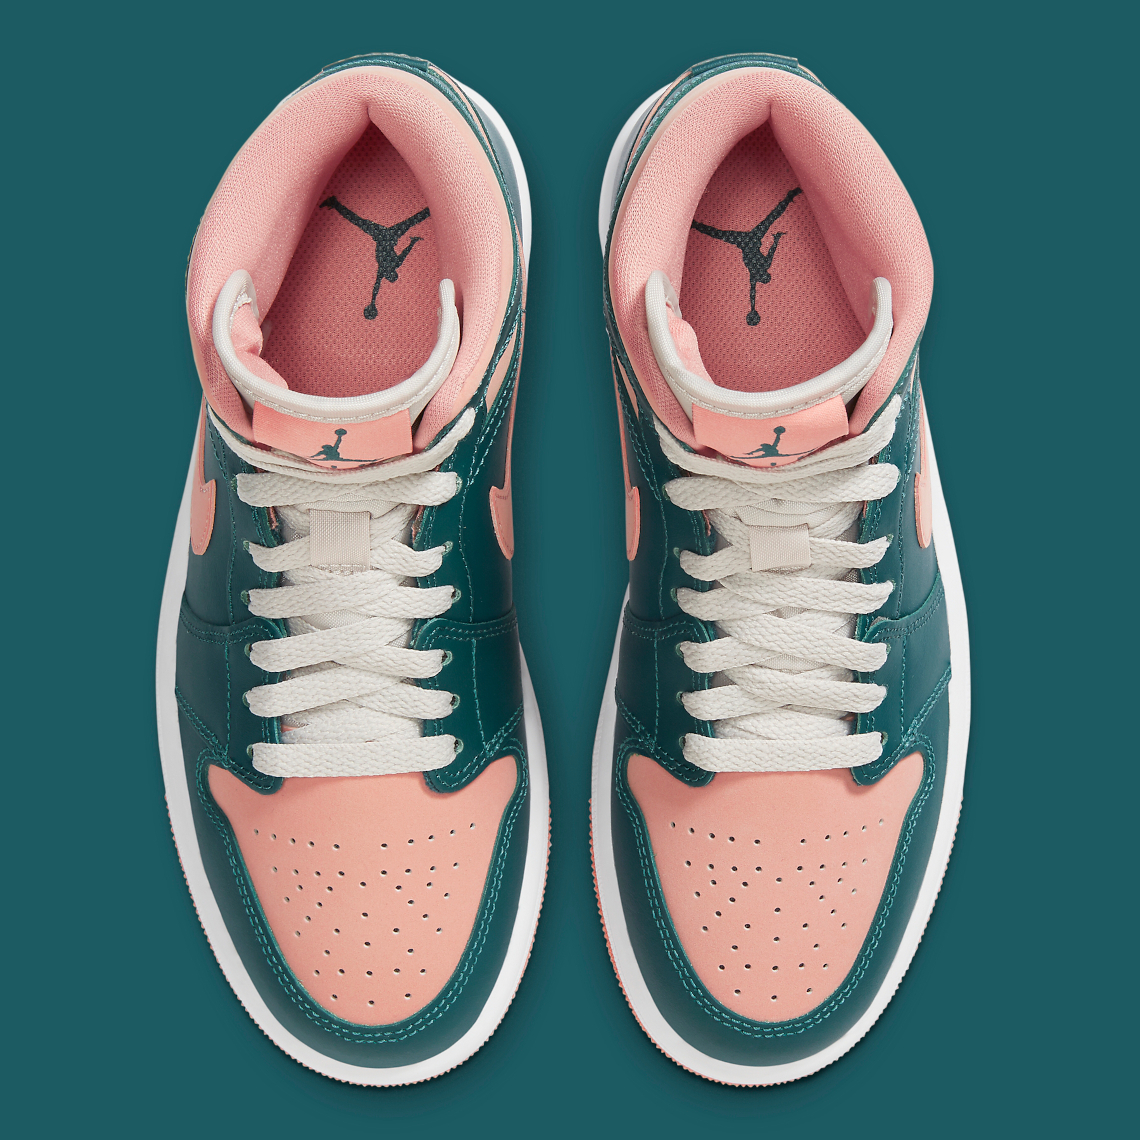 Air Jordan pink and green jordan 1 1 Mid "Dark Teal/Salmon" BQ6472-308 | SneakerNews.com